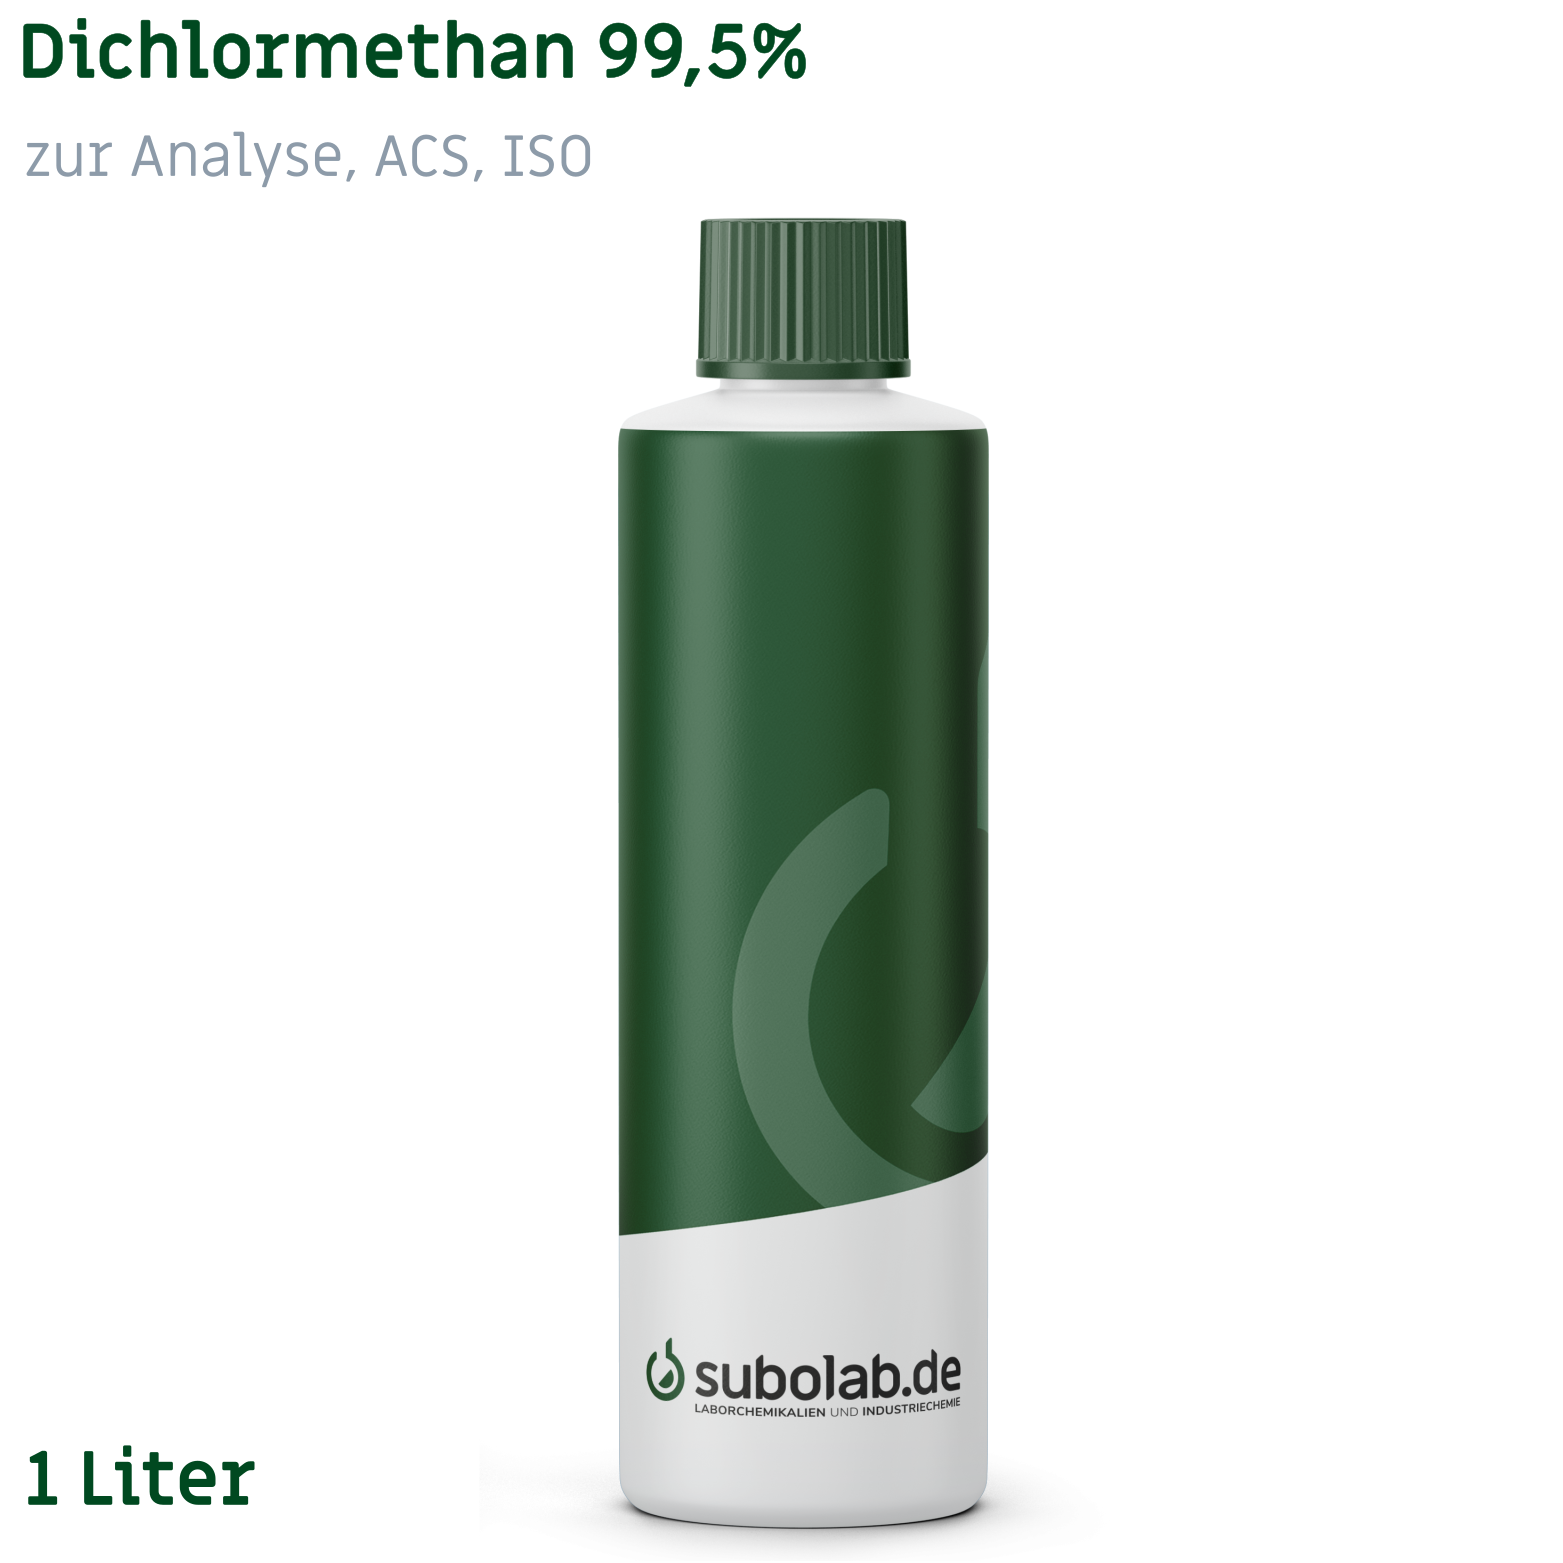 Bild von Dichlormethan 99,5% zur Analyse, ACS, ISO (1 Liter)